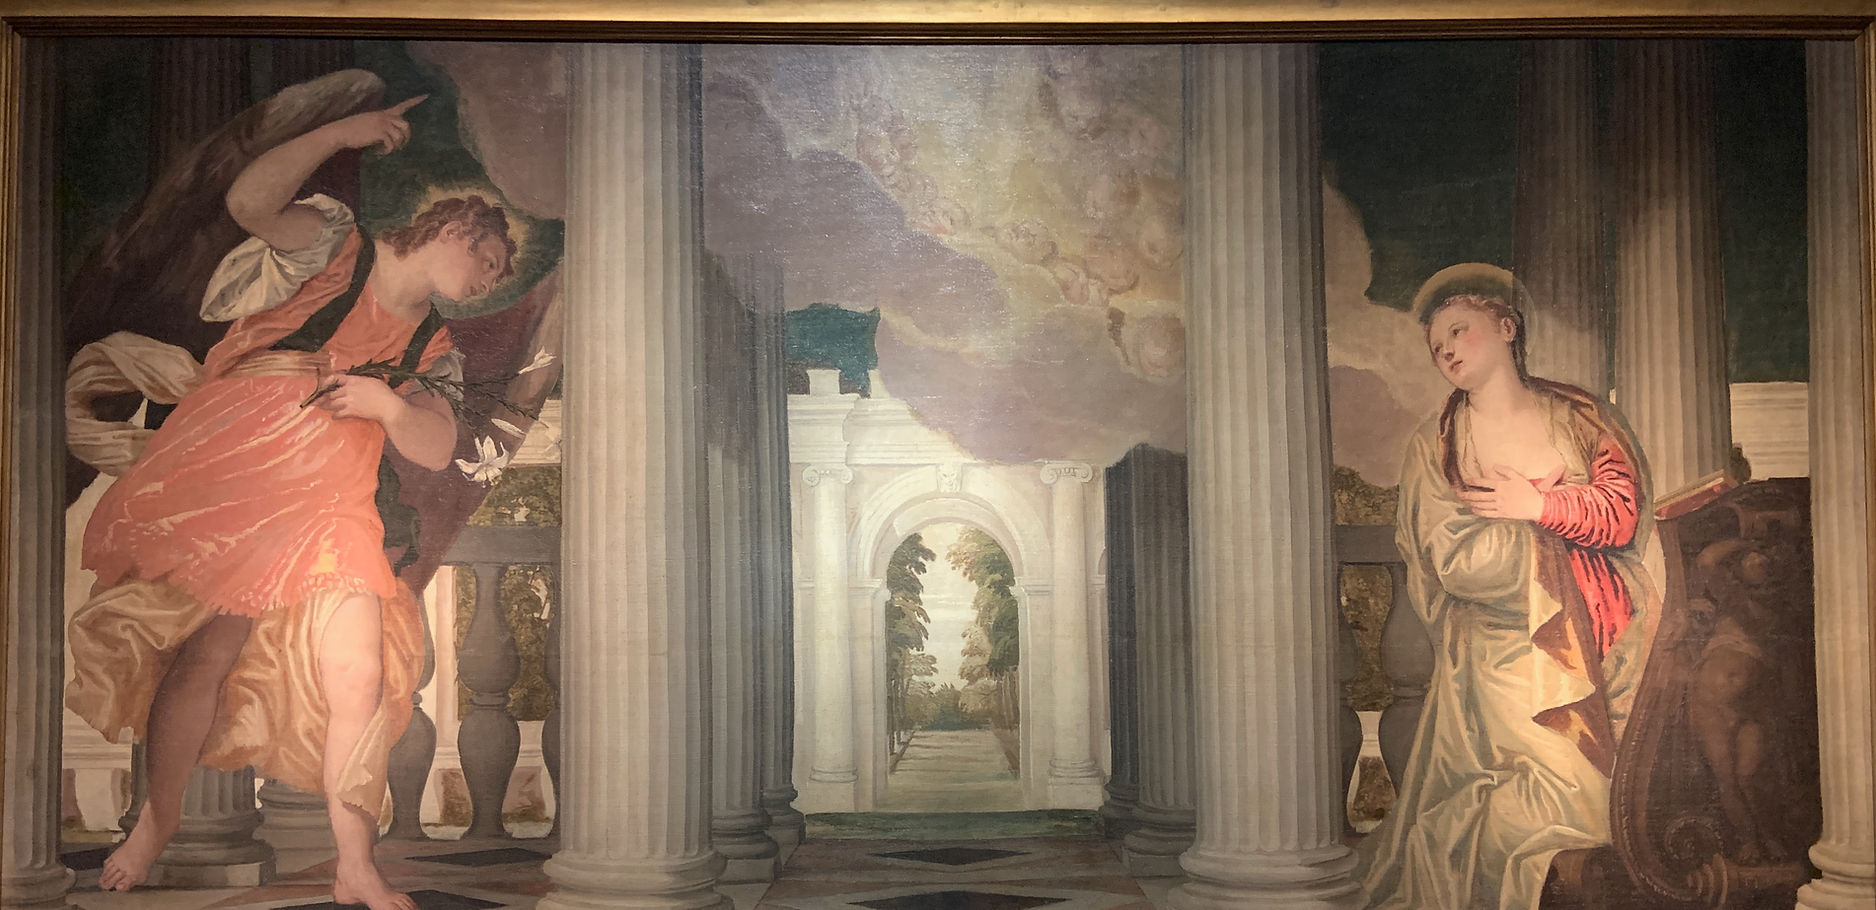 Paolo Veronese "Annunciazione" 1556 circa, olio su tela 143x291 cm, Gallerie degli Uffizi, Firenze. La foto è di Manuela Moschin.